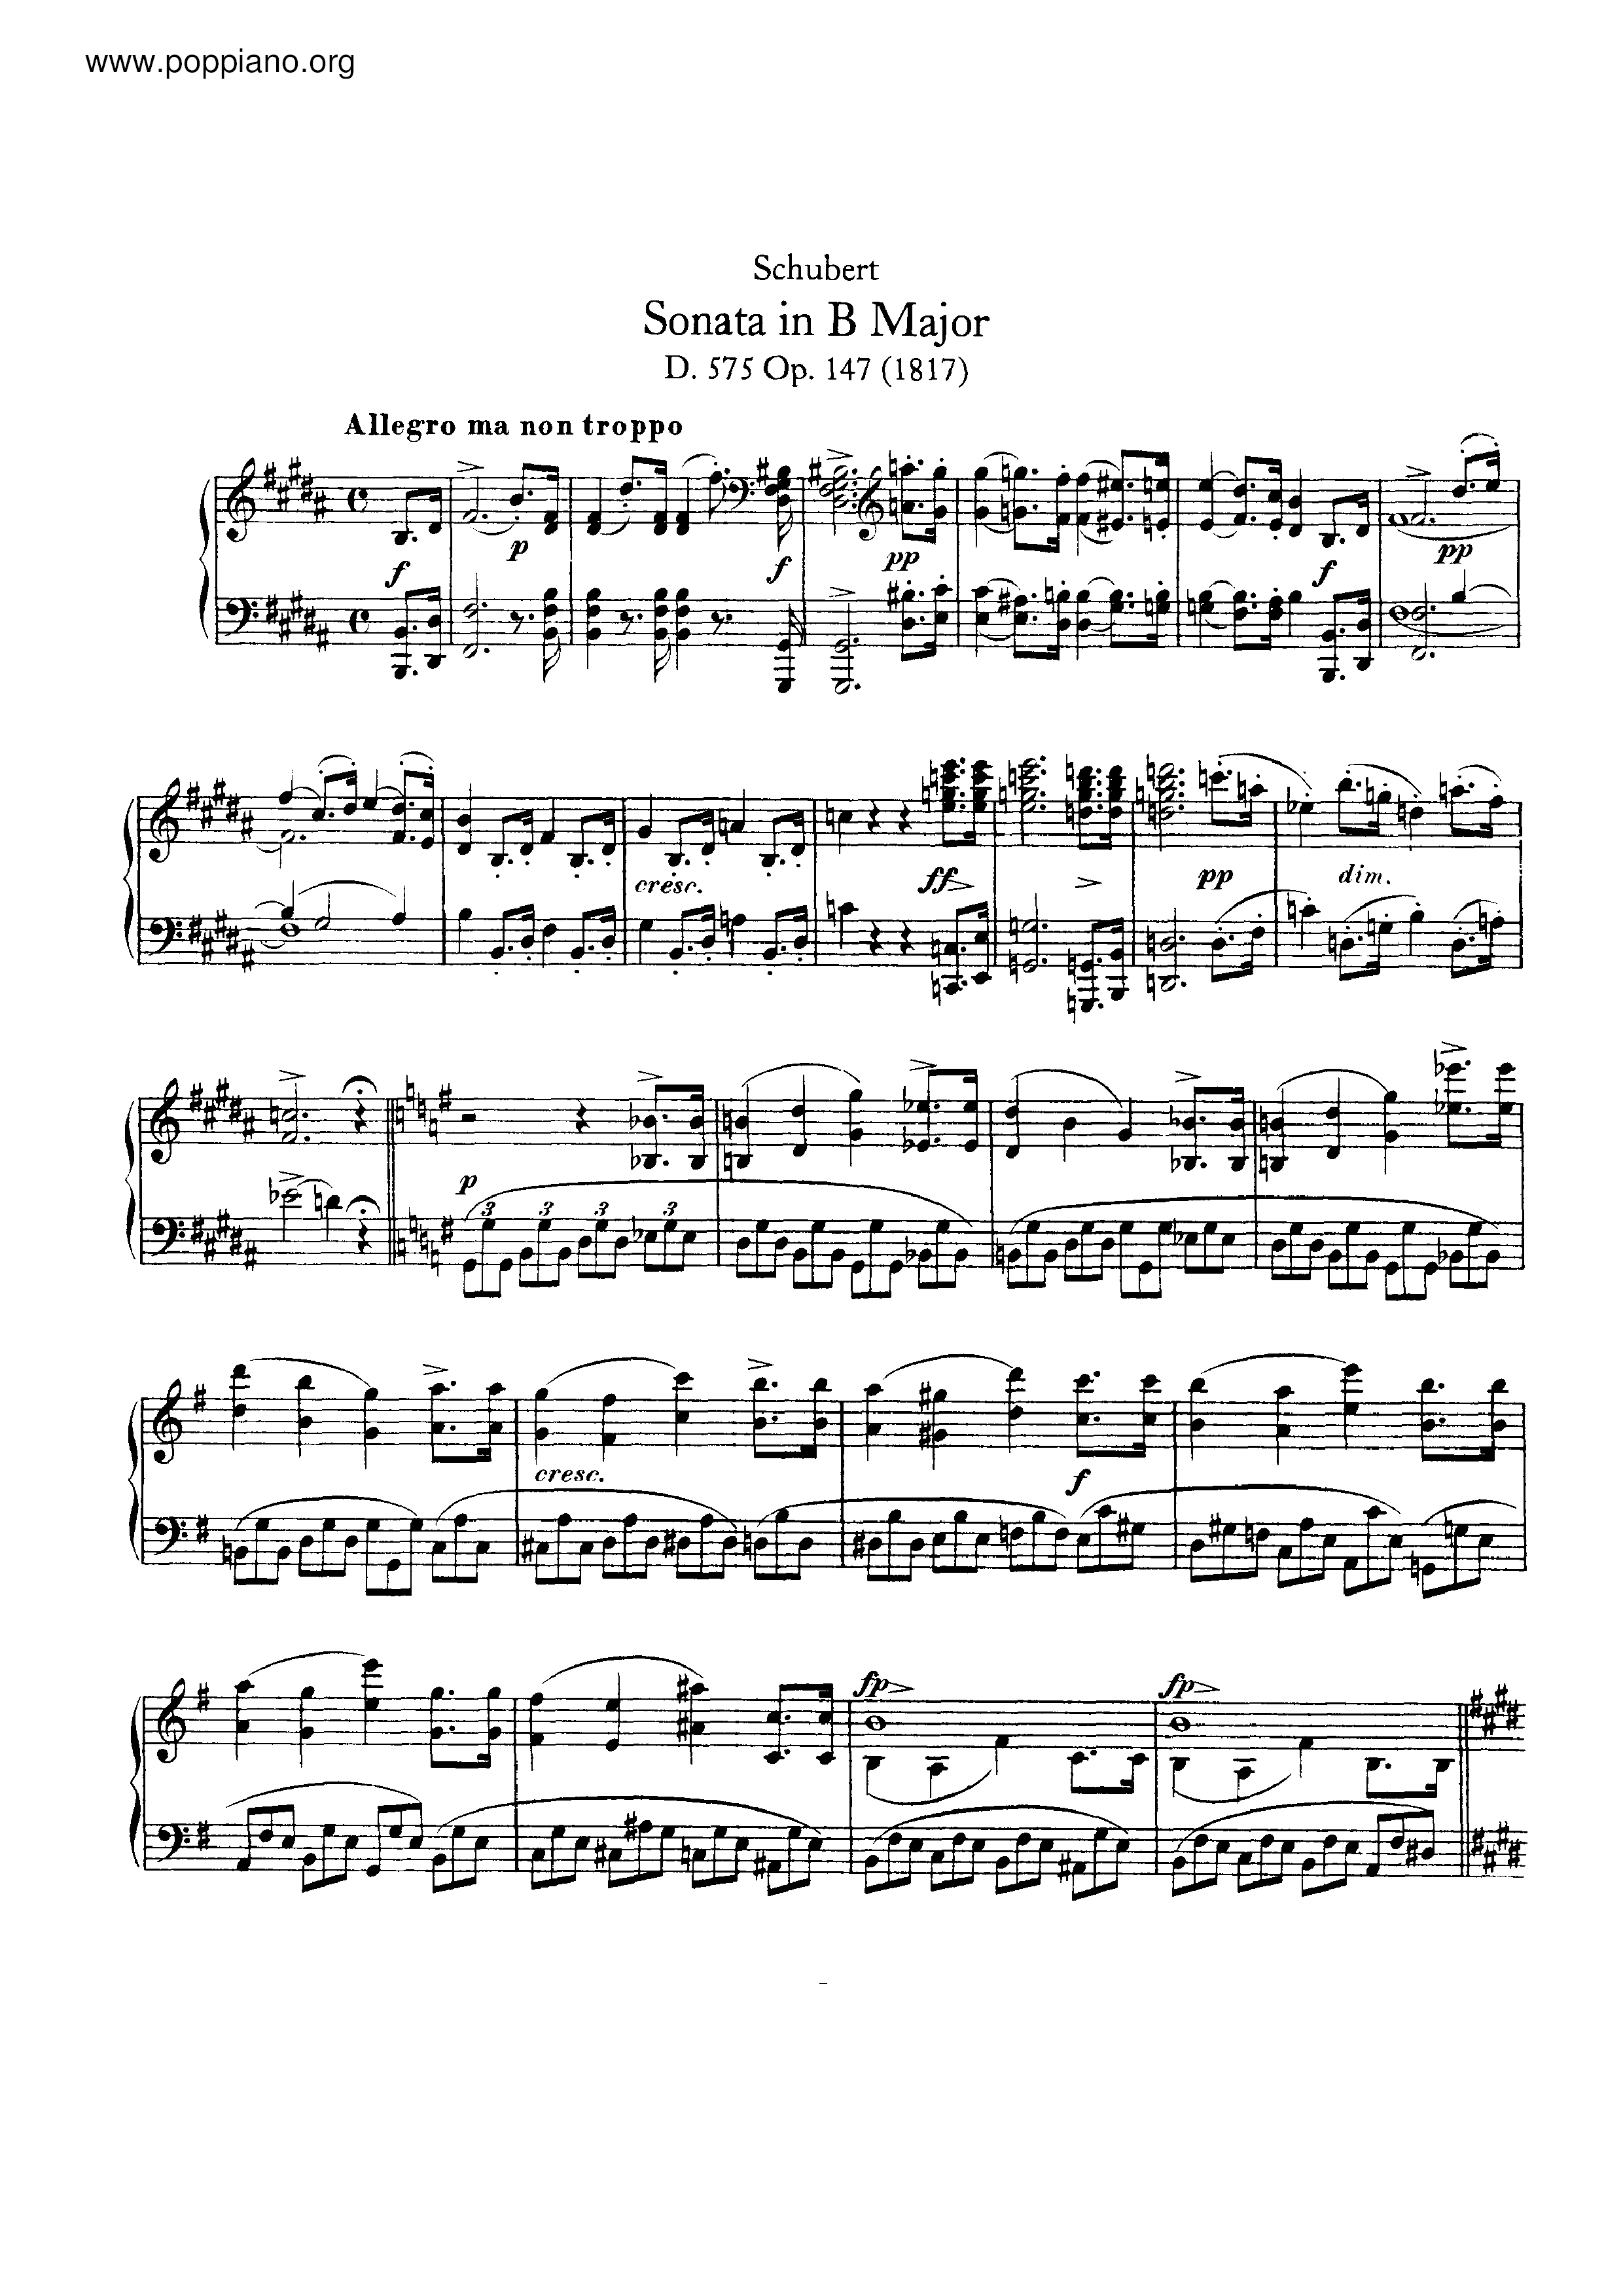 Piano Sonata in B major, D.575 Score